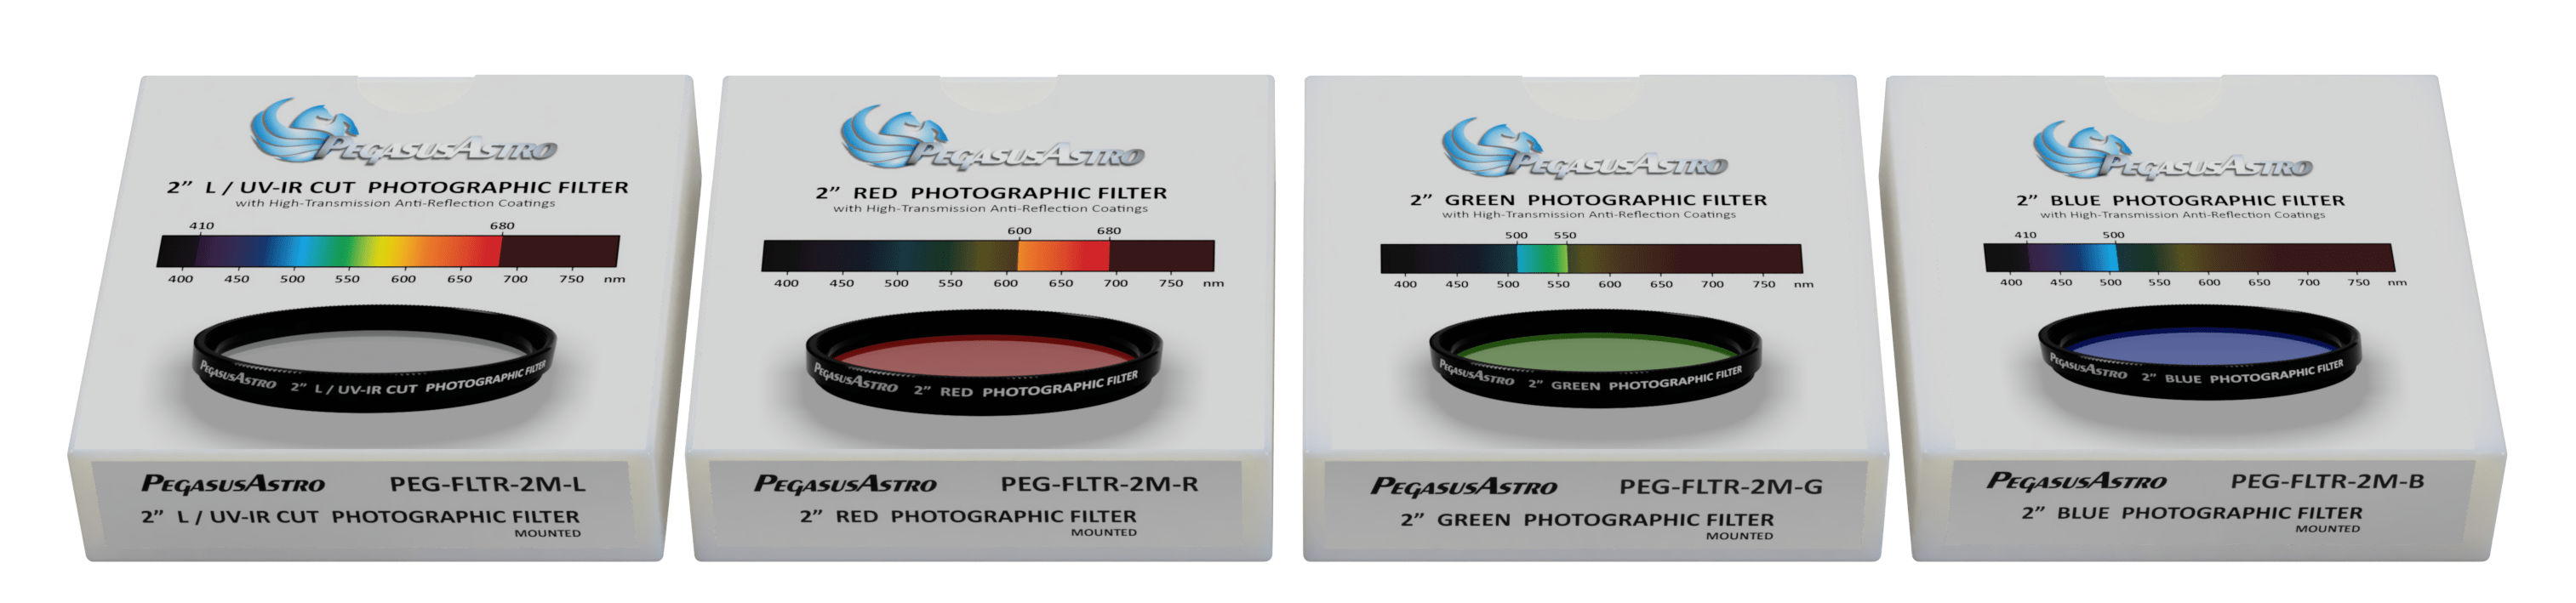 Pegasus Astro Filter Wheel LRGB Filter Set (set of 4 filters) Pegasus Astro 2" Filters - LRGB (Lum, Red, Green, Blue) & 7nm SHO (SII, Ha, OIII)